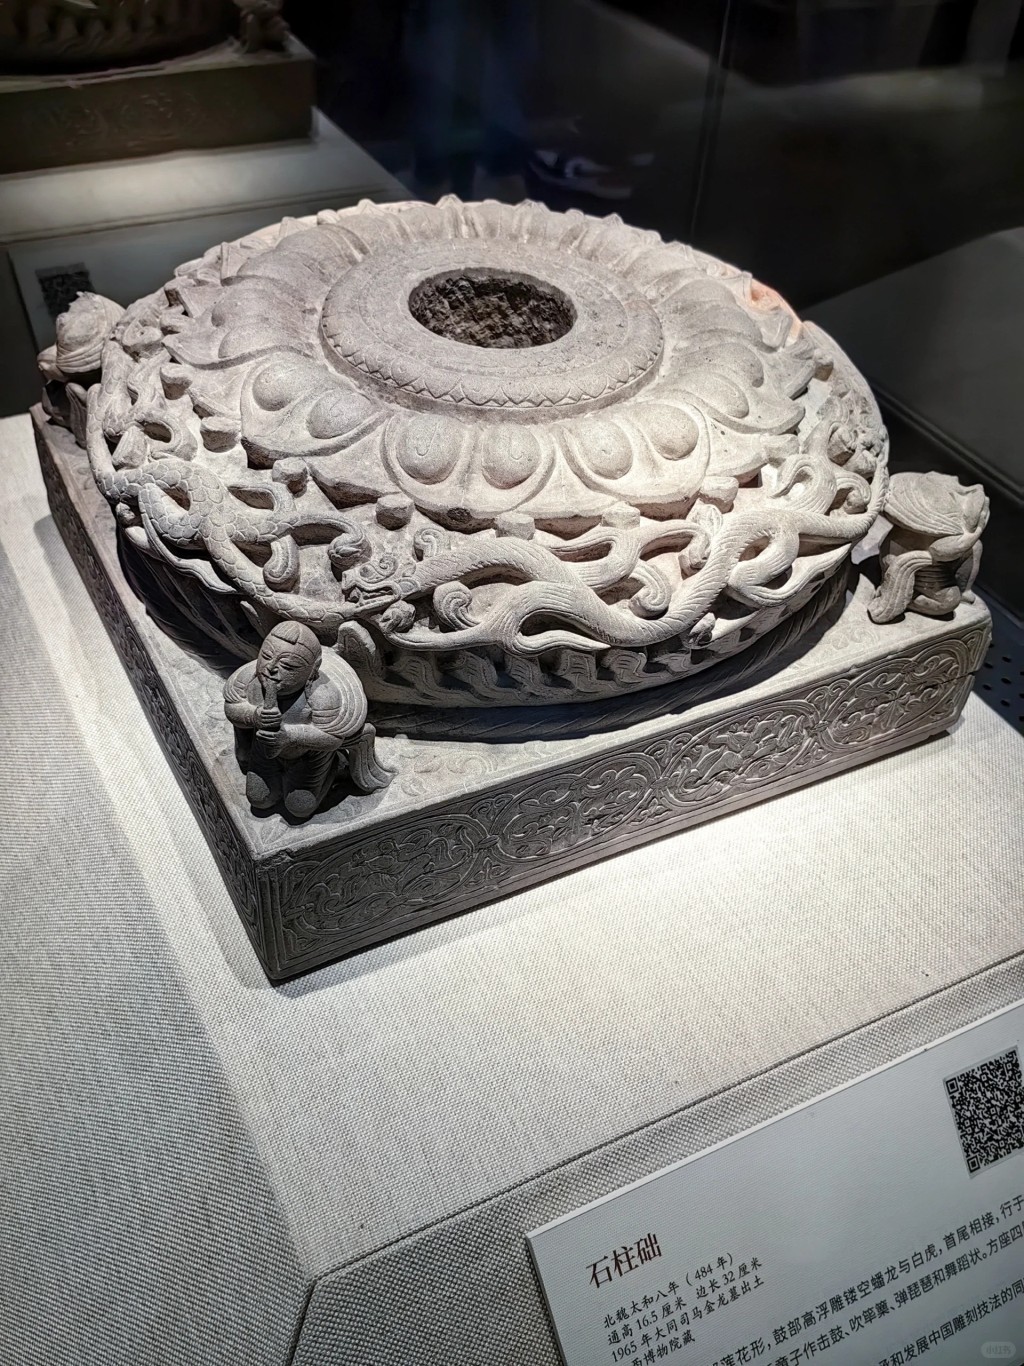 另外还有超过200件展品及北魏王朝文物珍品（图片来源：小红书）